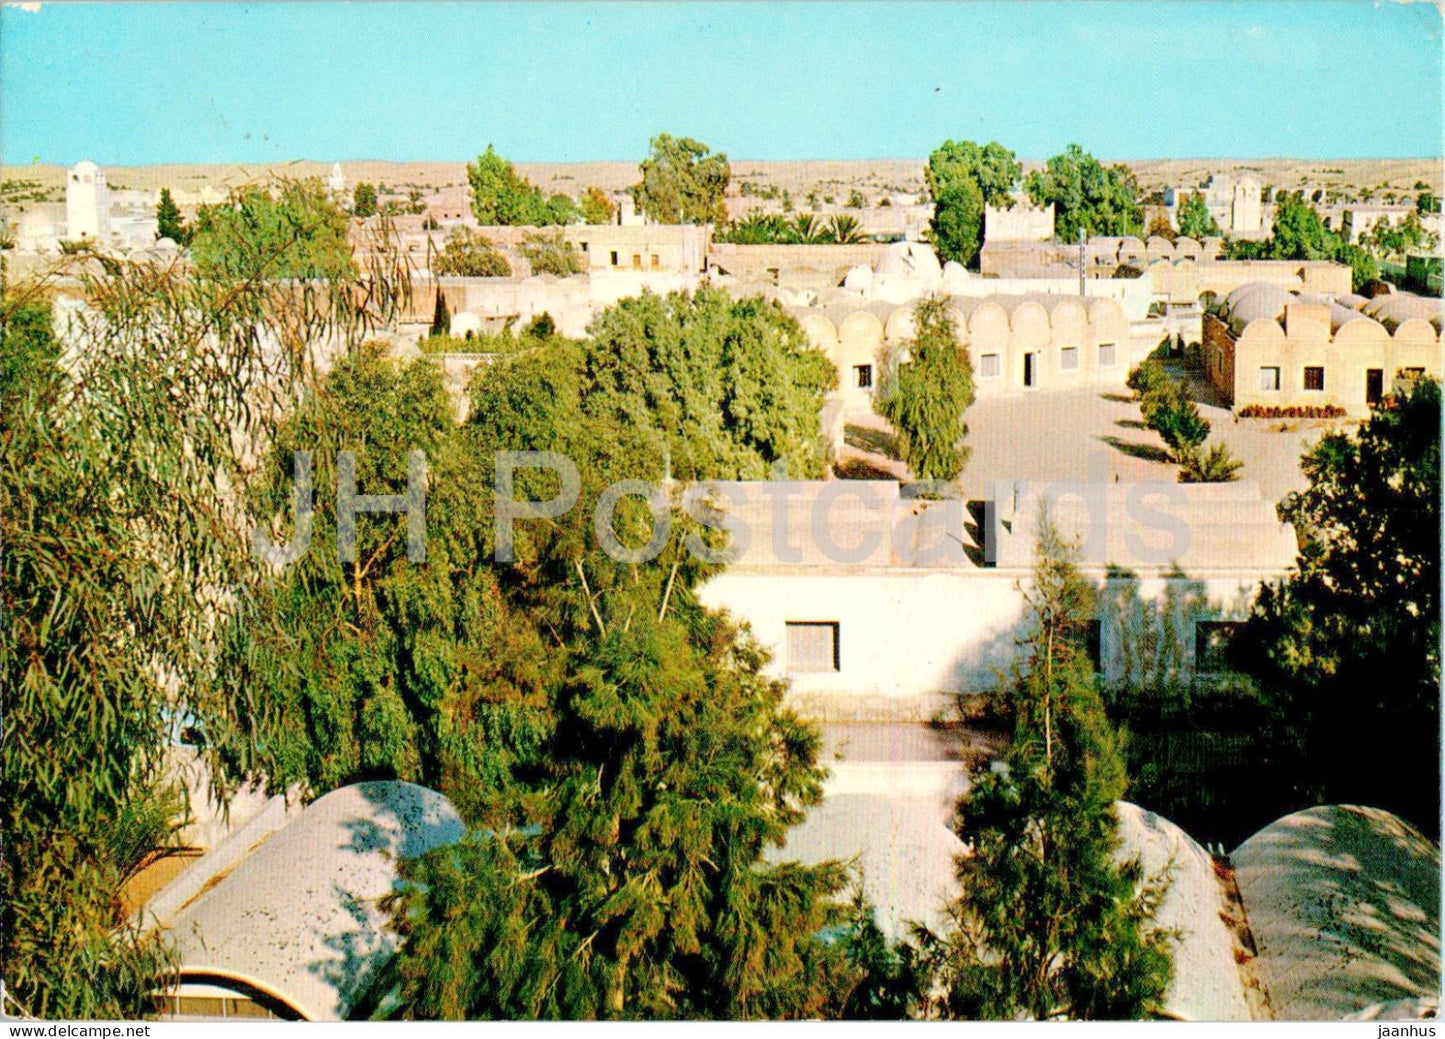 El Oued - Vue d'Ensemble - 4517 - Algeria - used - JH Postcards